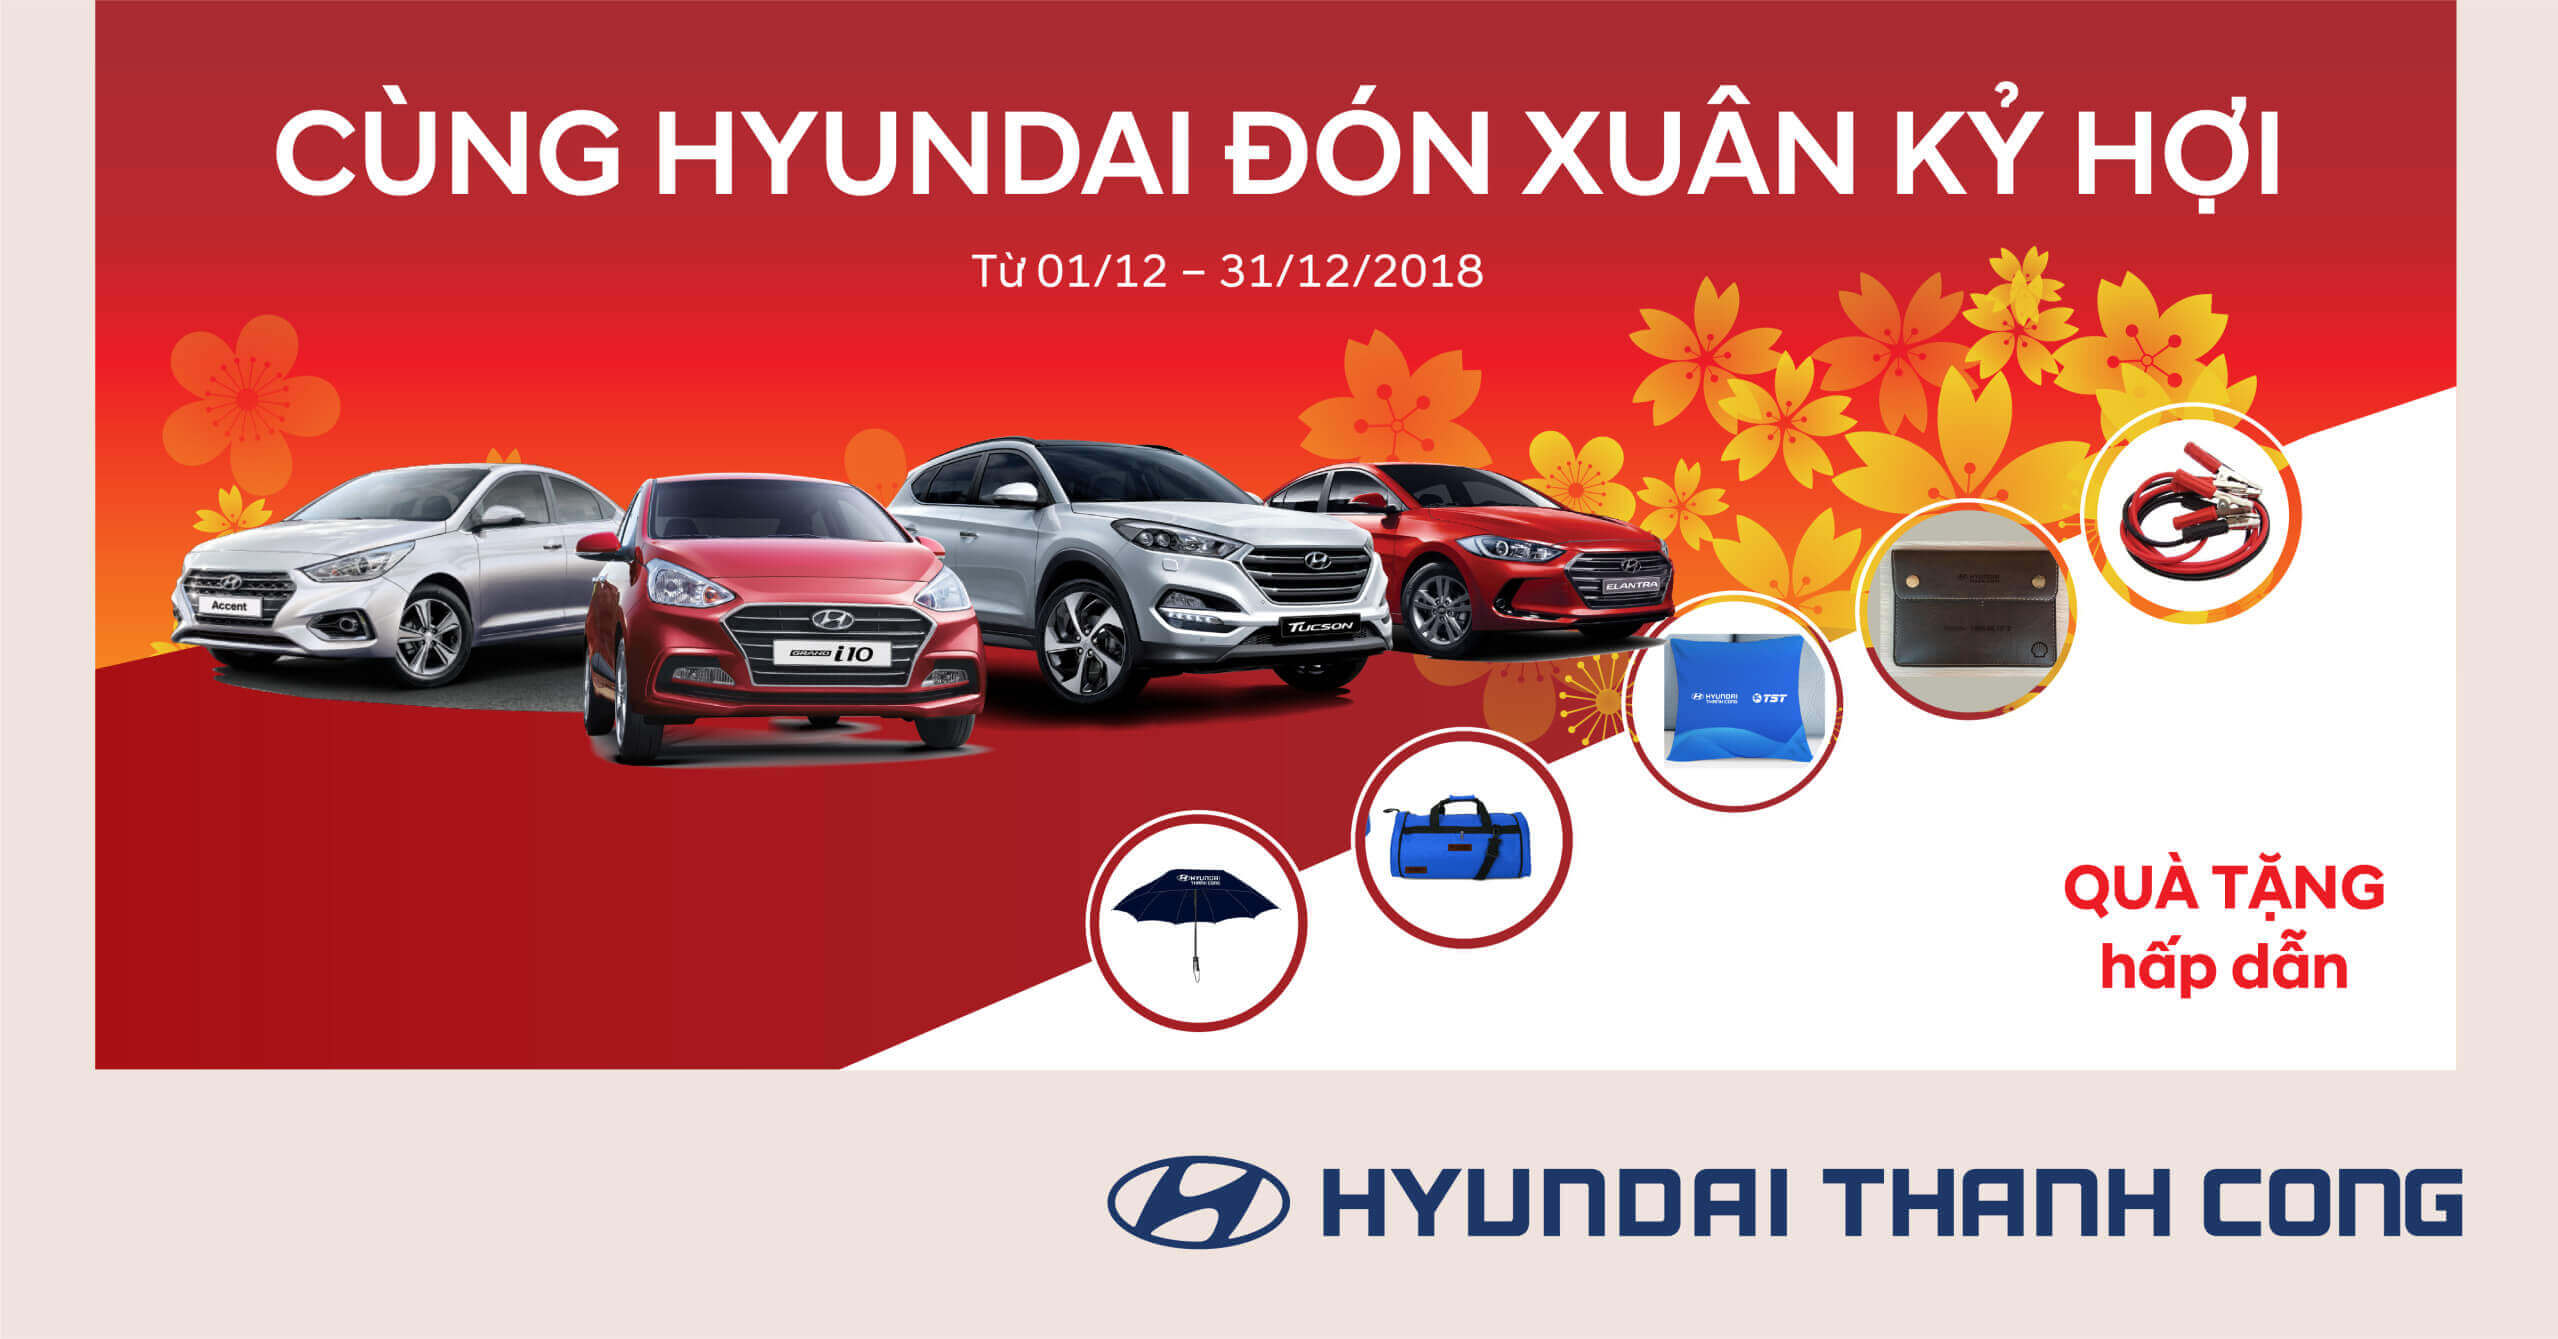 Mừng Xuân Hyundai, đón Xuân Kỷ Hợi 